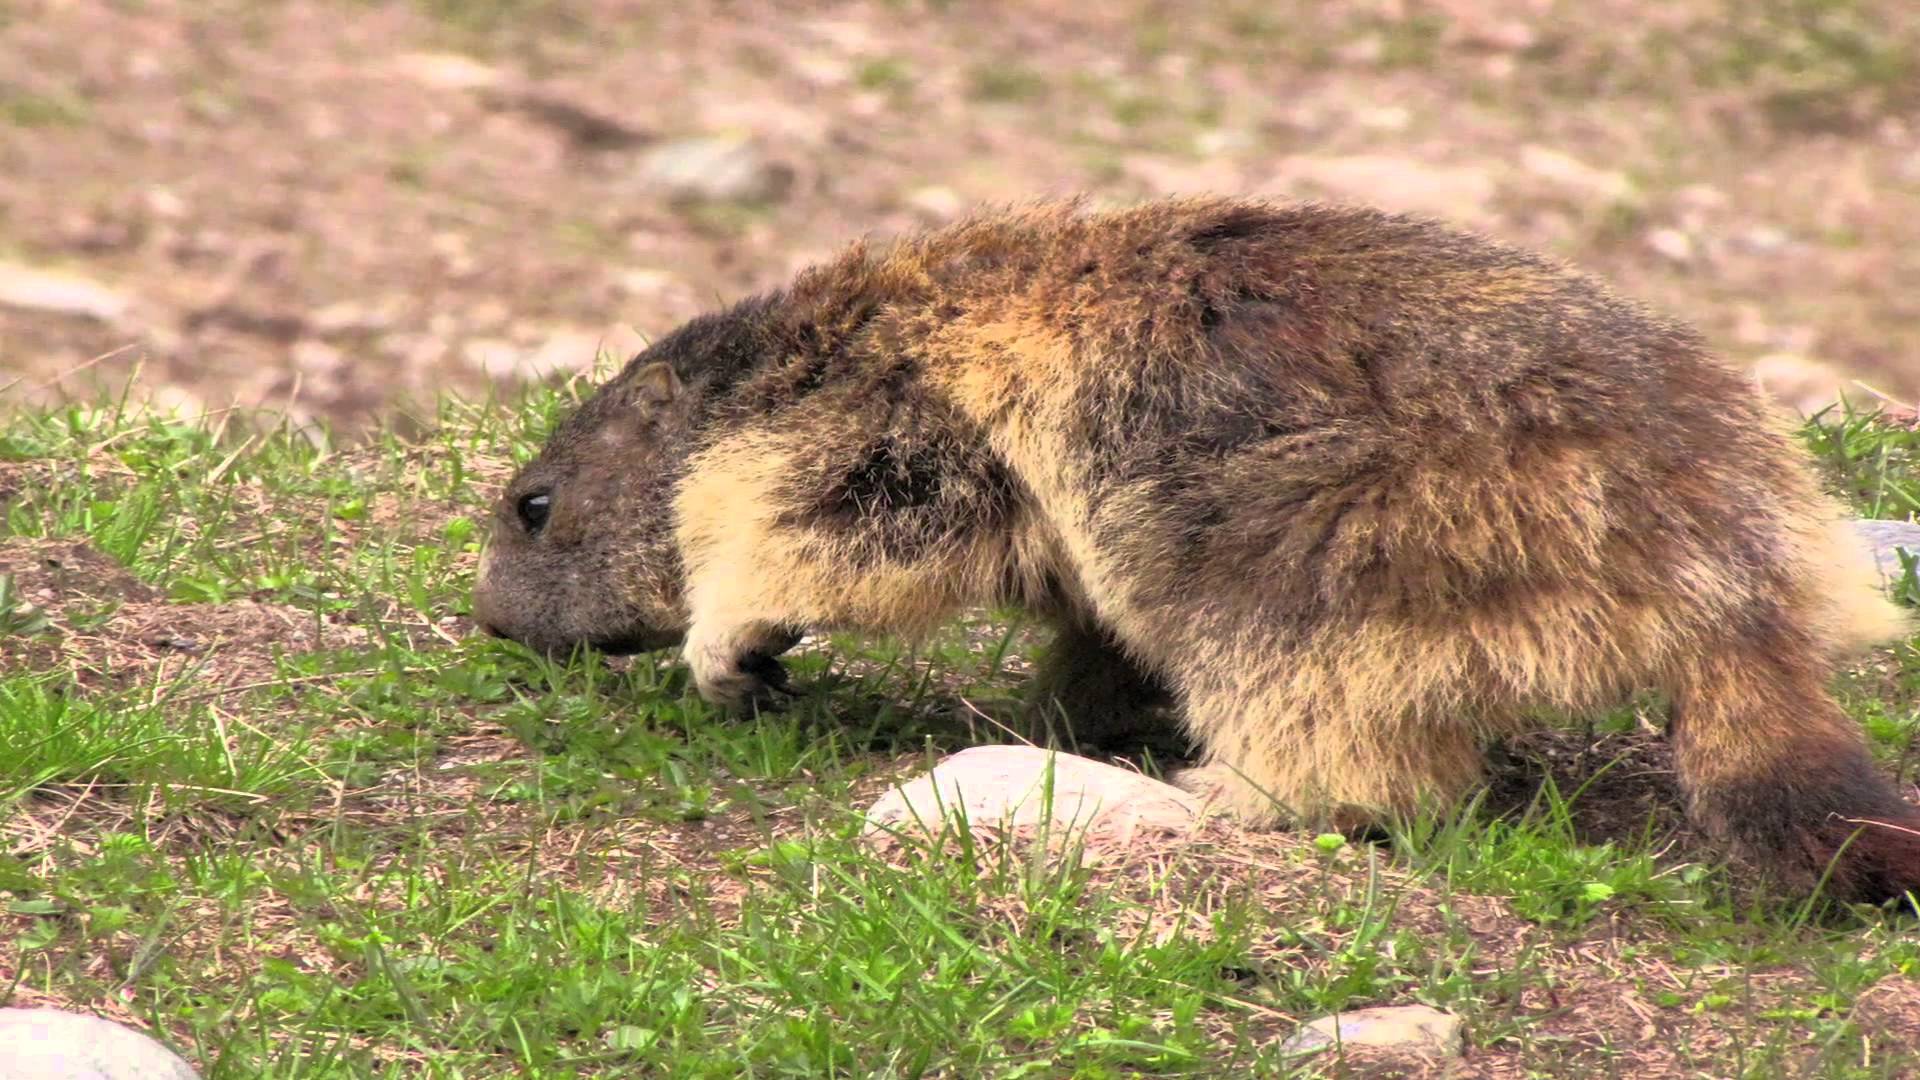 Pillole di natura: Marmotte, che passione!